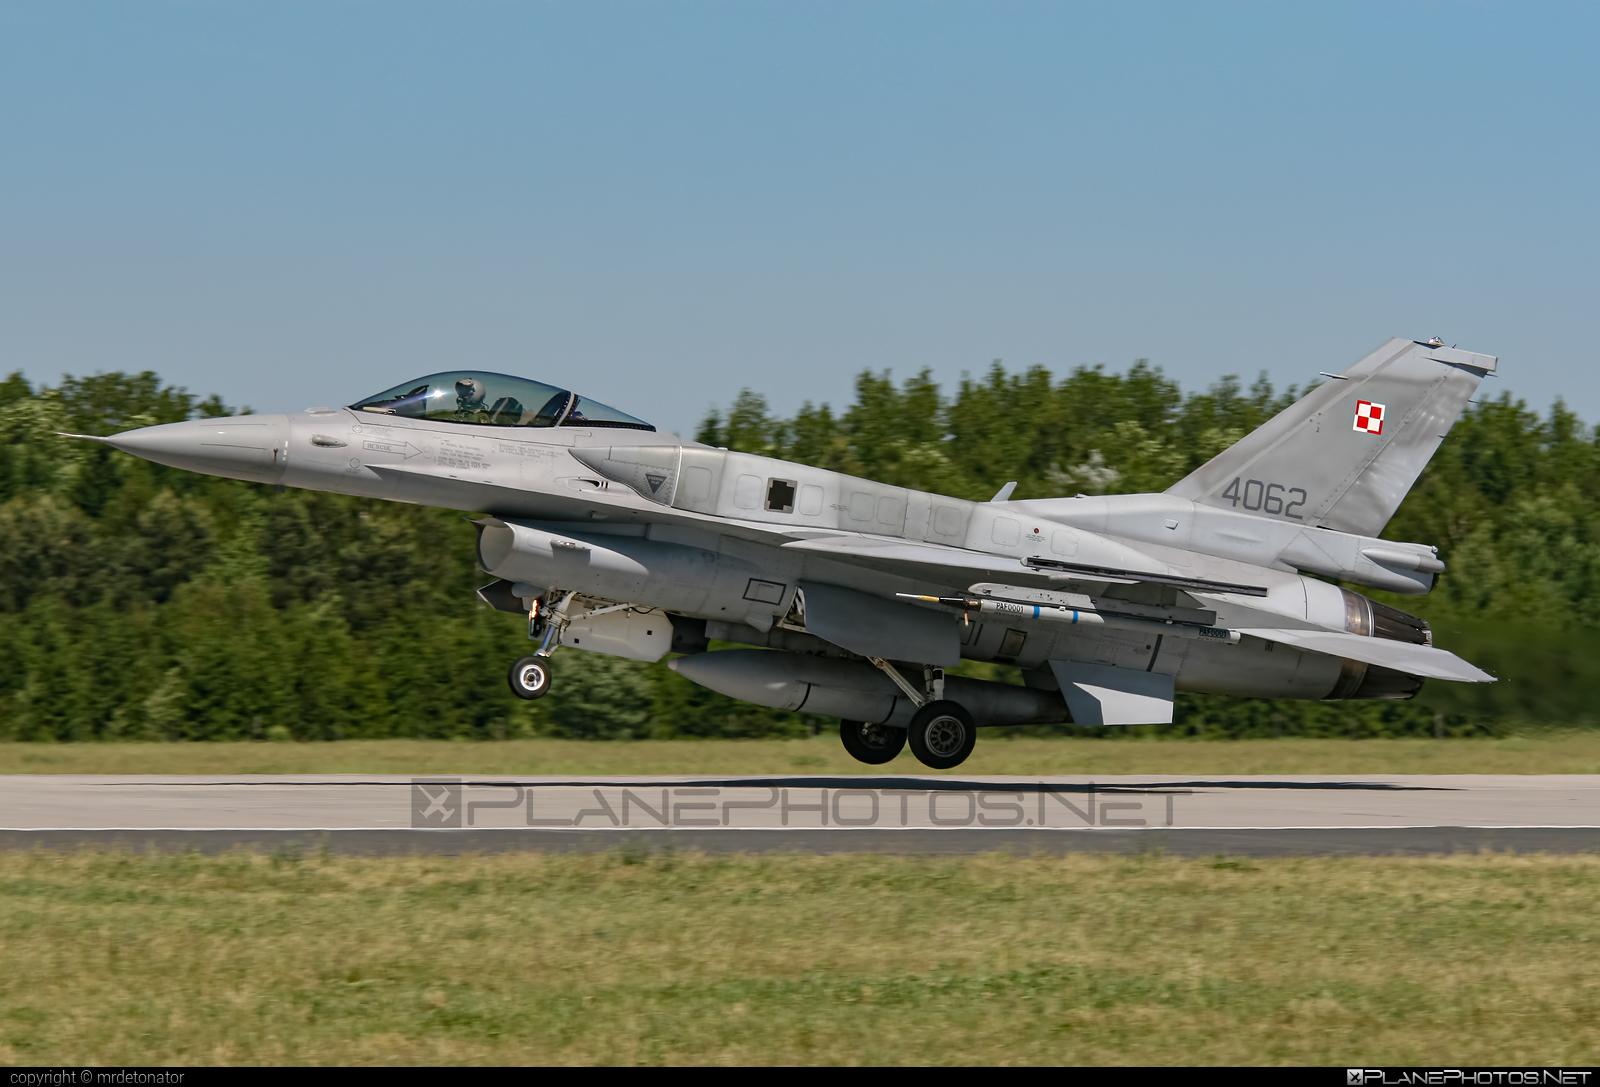 Lockheed Martin F-16C Fighting Falcon - 4062 operated by Siły Powietrzne Rzeczypospolitej Polskiej (Polish Air Force) #LockheedMartin #f16 #f16c #fightingfalcon #polishairforce #silypowietrzne